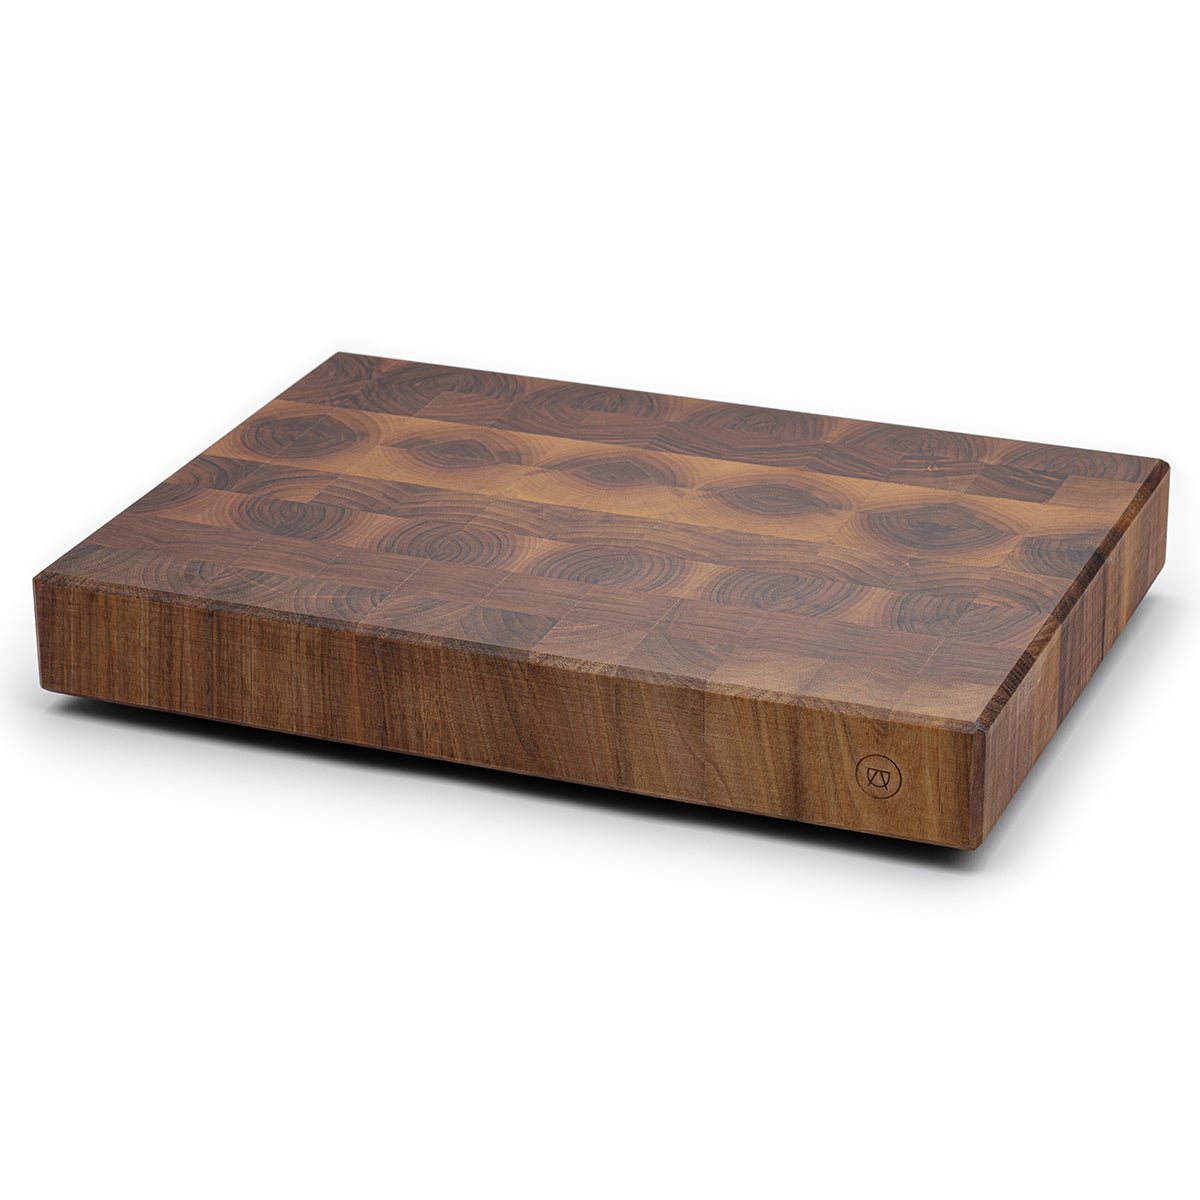 Chopping block “Hannibal” made of premium walnut